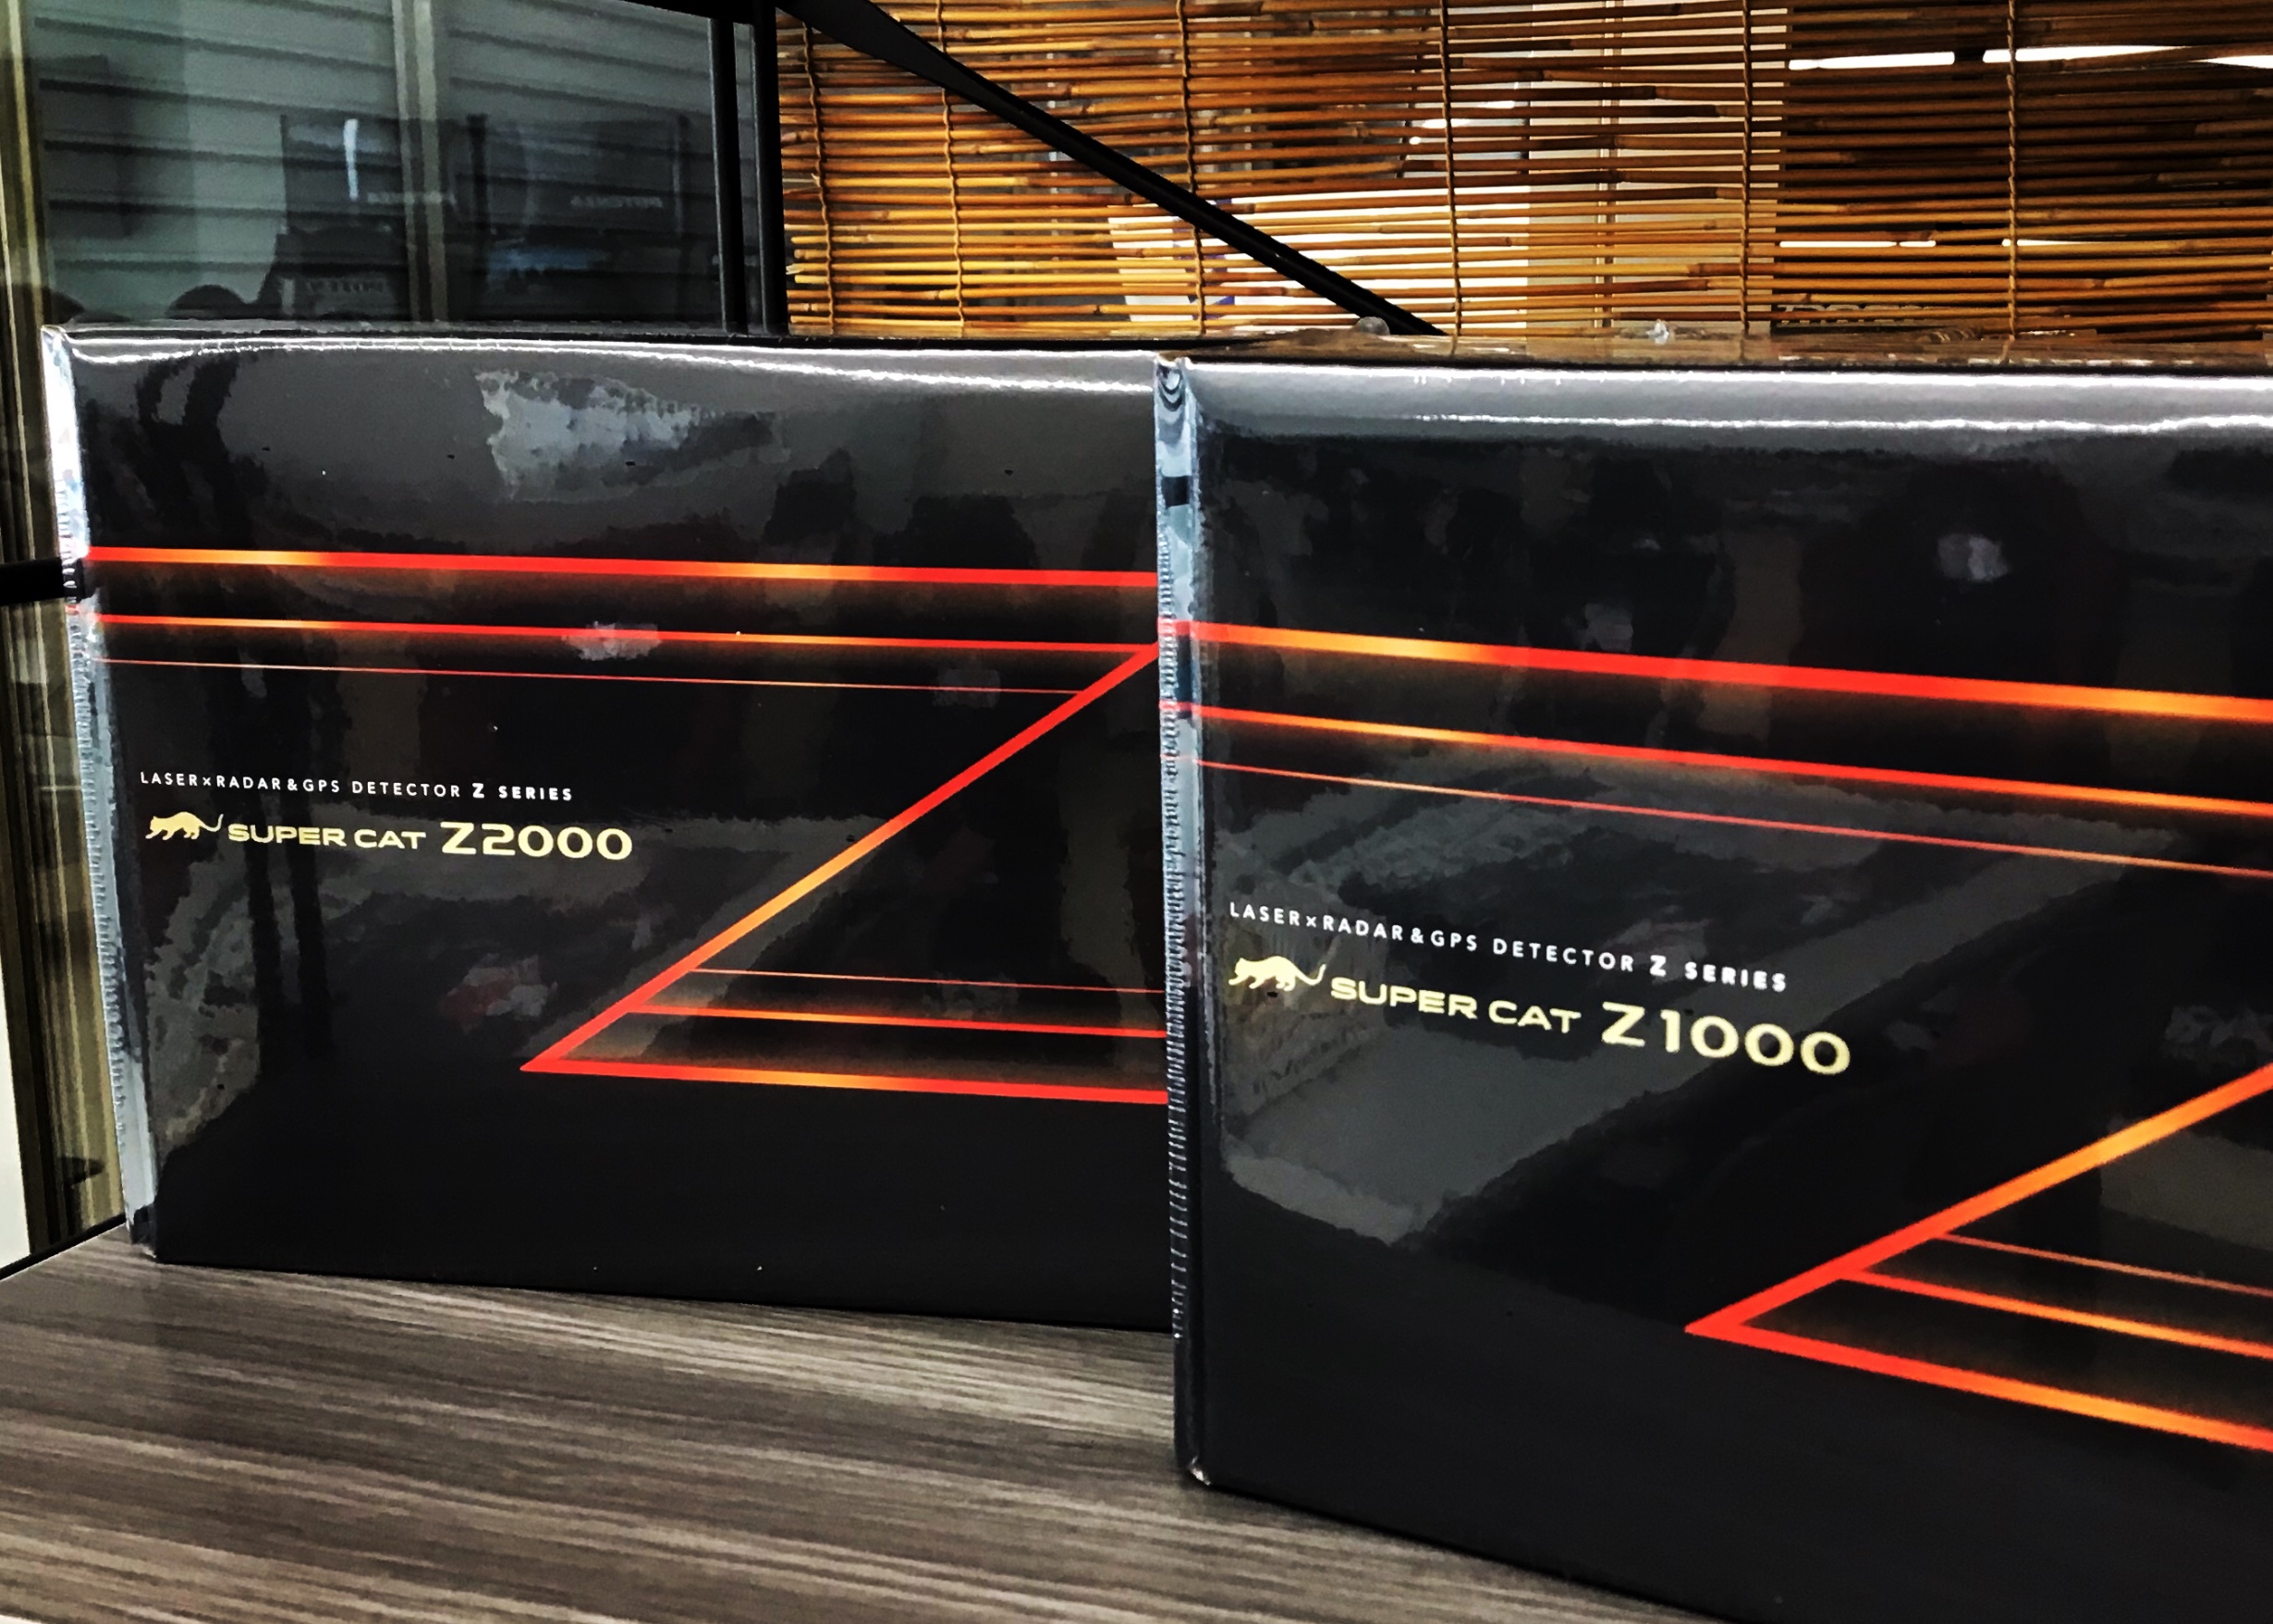 ユピテル史上最強のレーザー探知性能「ユピテル指定店モデル Z1000」を